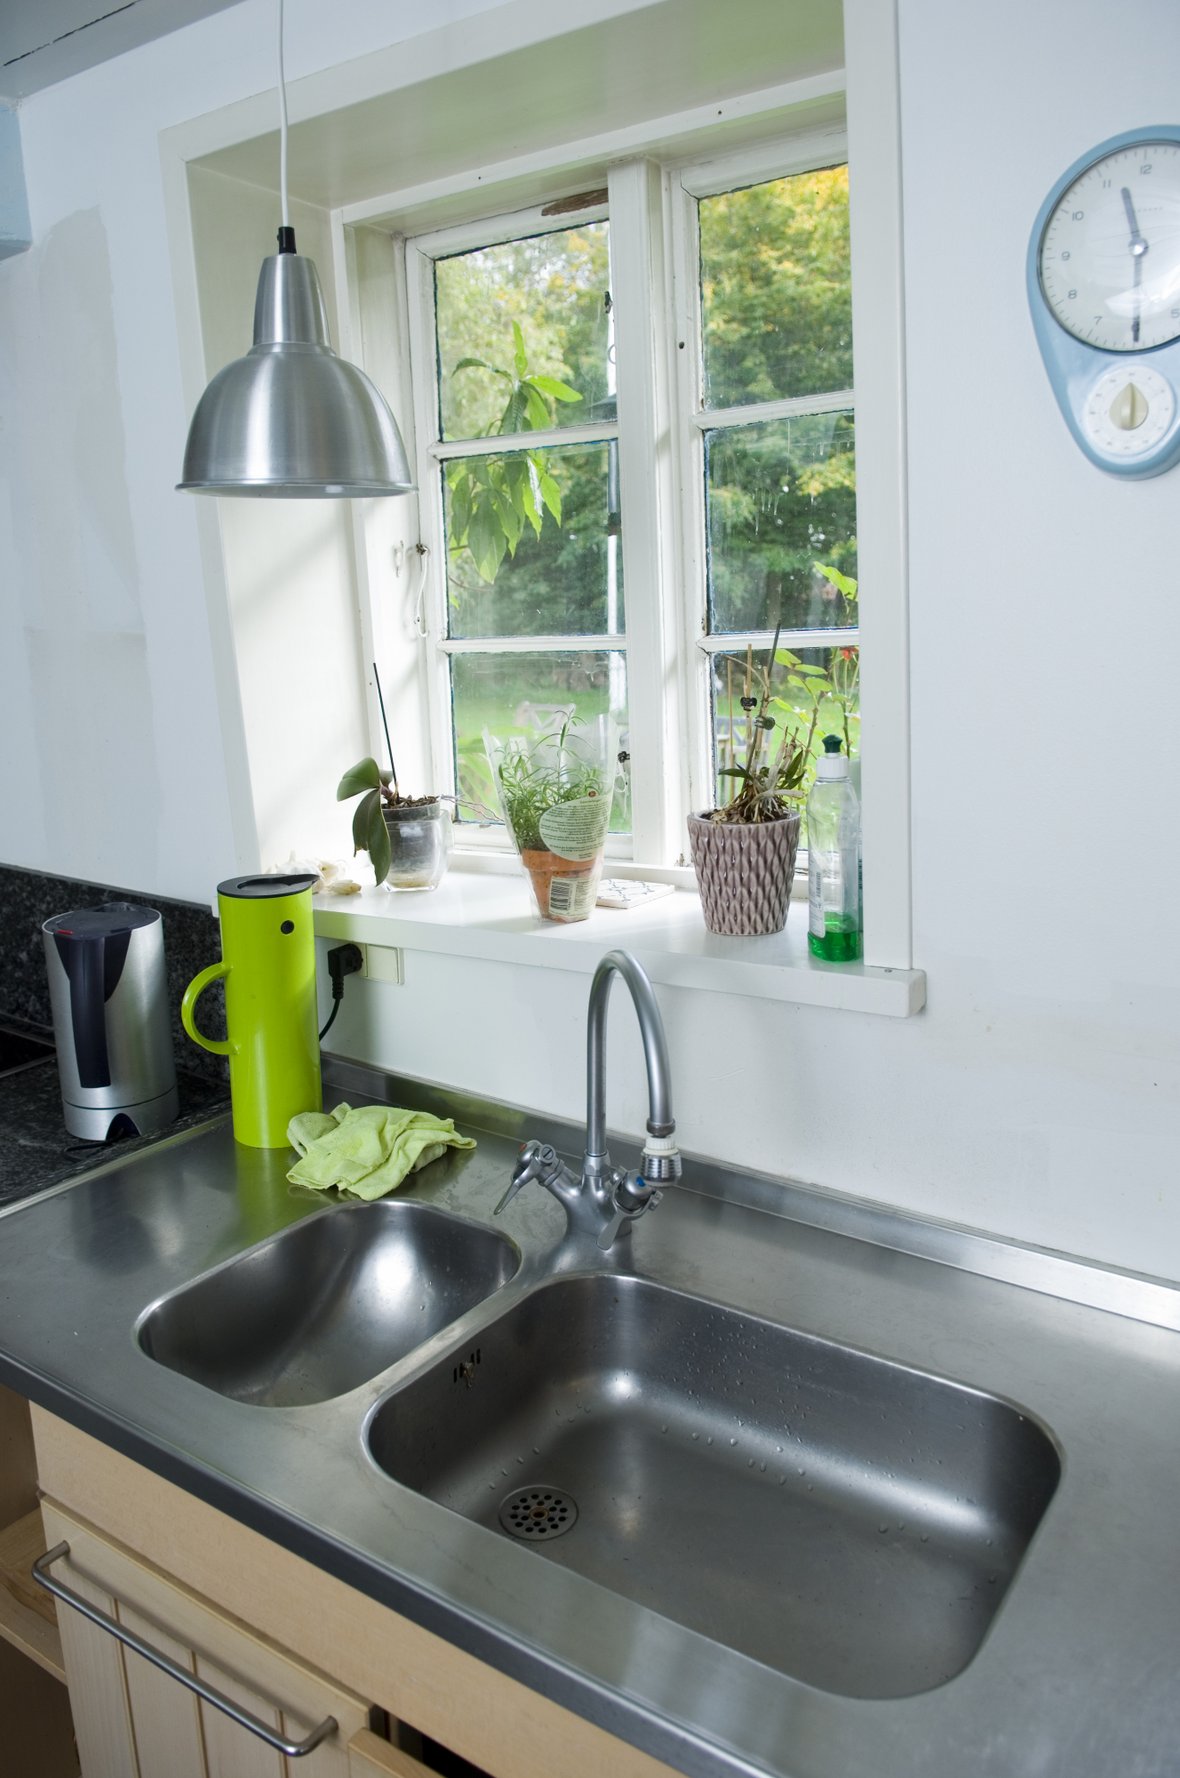 Guide til køb køkkenvask | Vælg den rigtige vask til dit køkken